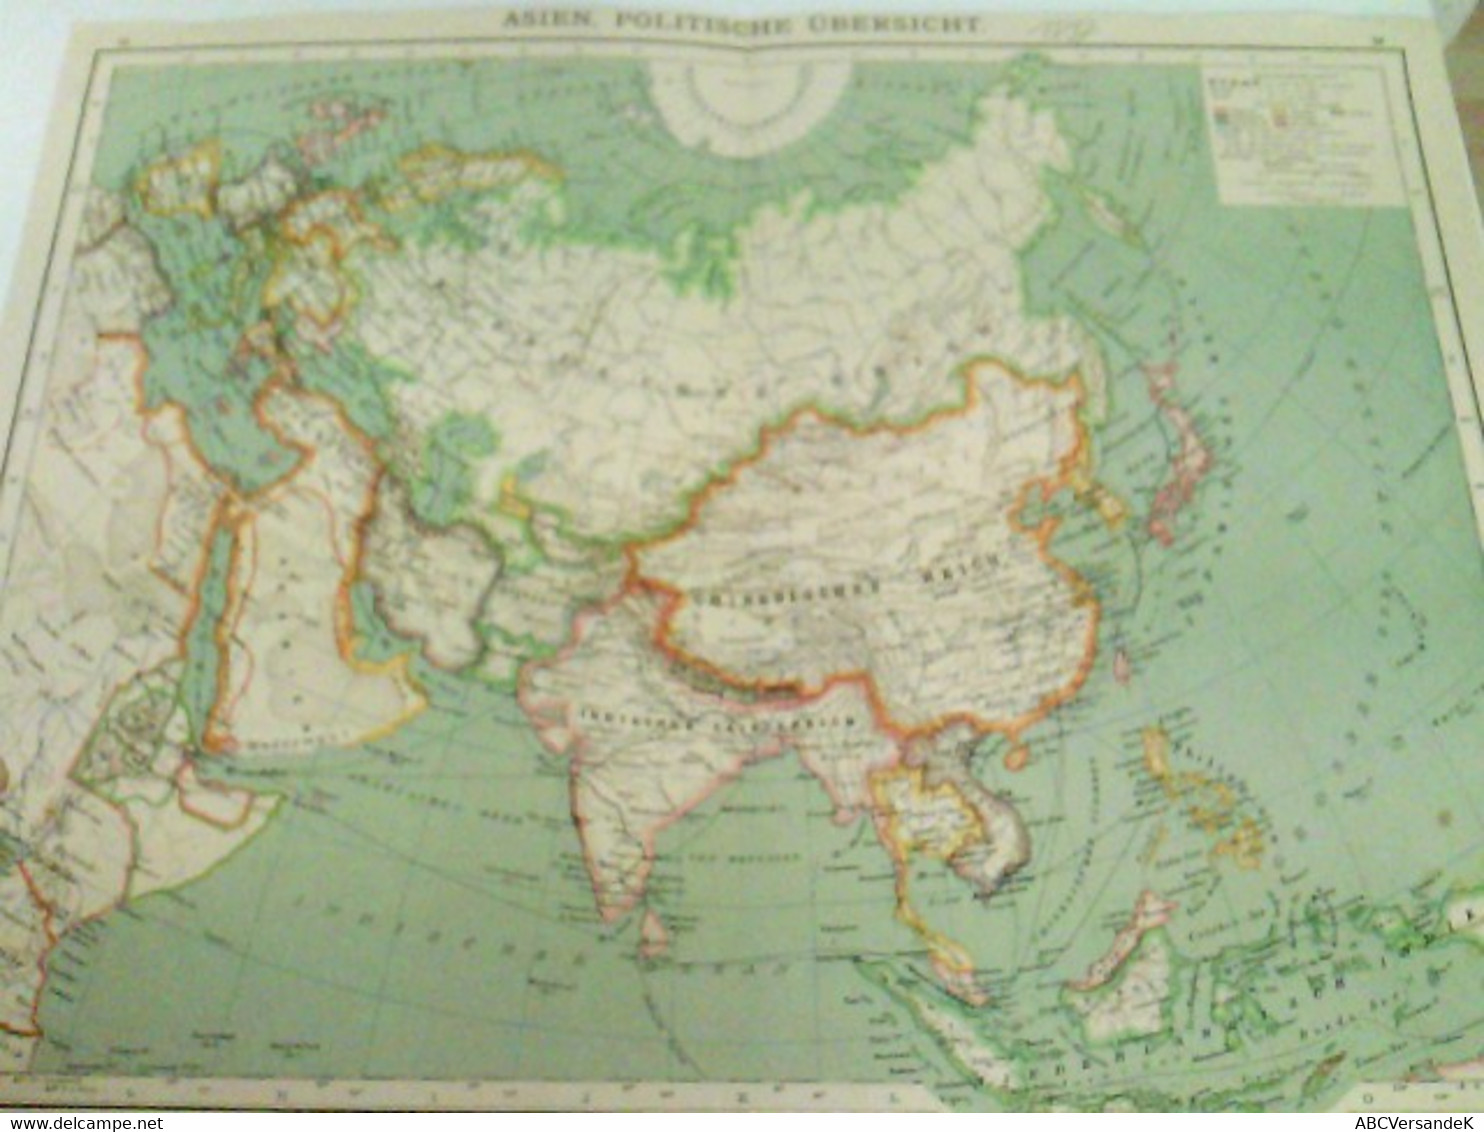 Farblithografie Asien, Politische Übersicht, Maßstab 1 : 35.000.000 - Asie & Proche Orient